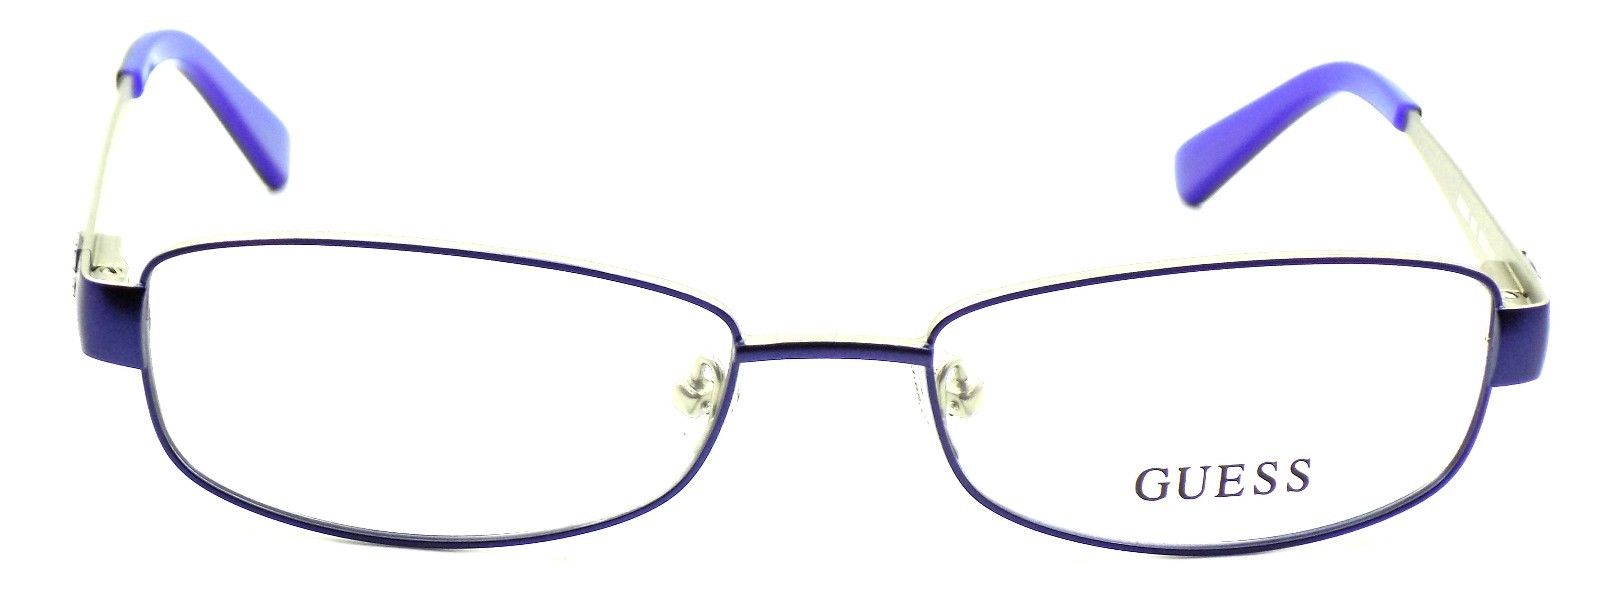 2-GUESS GU2569 091 Women's Eyeglasses Frames 53-17-135 Blue + CASE-664689783922-IKSpecs